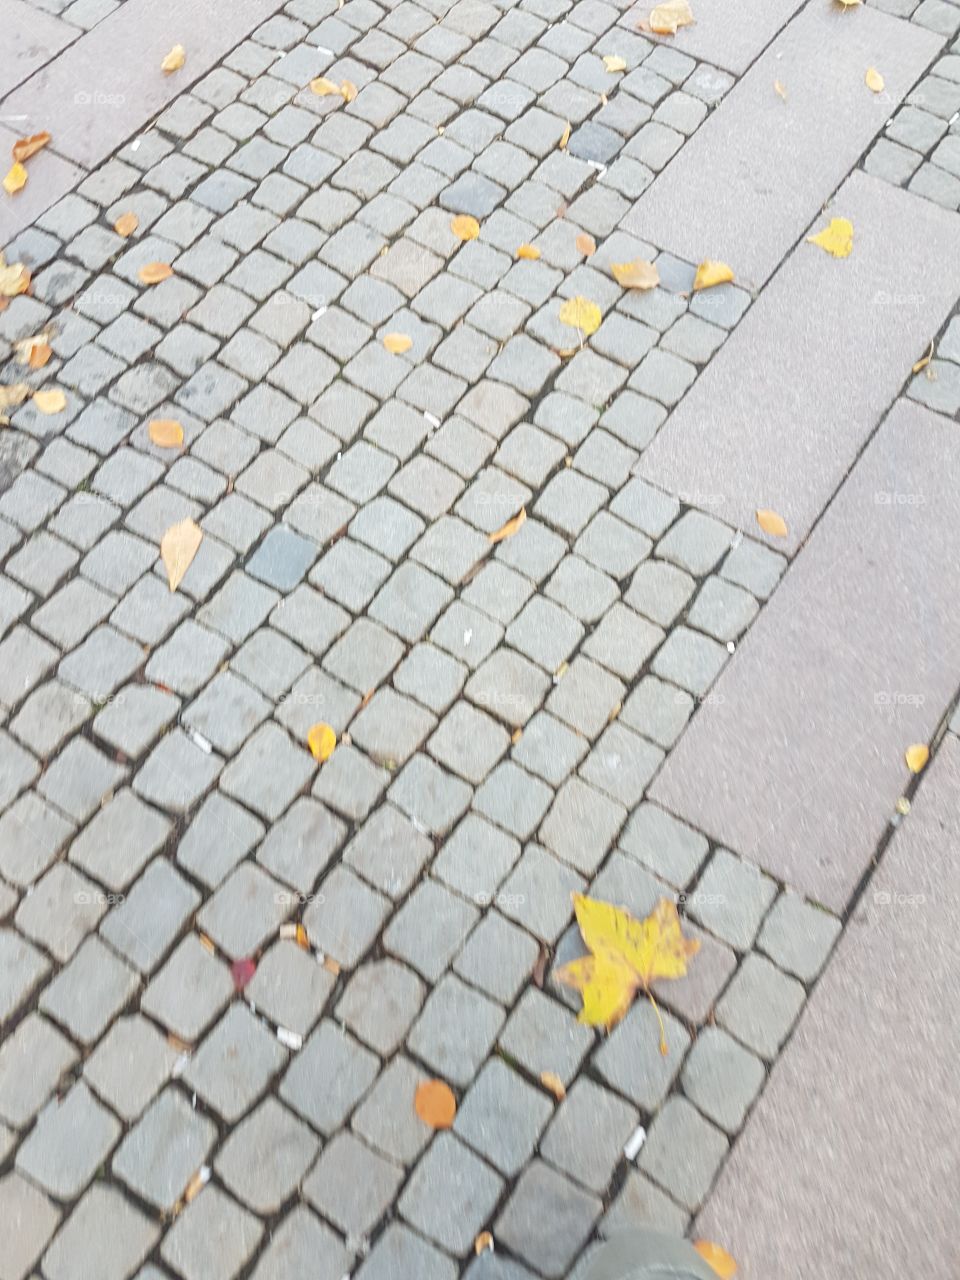 Autumn Streets